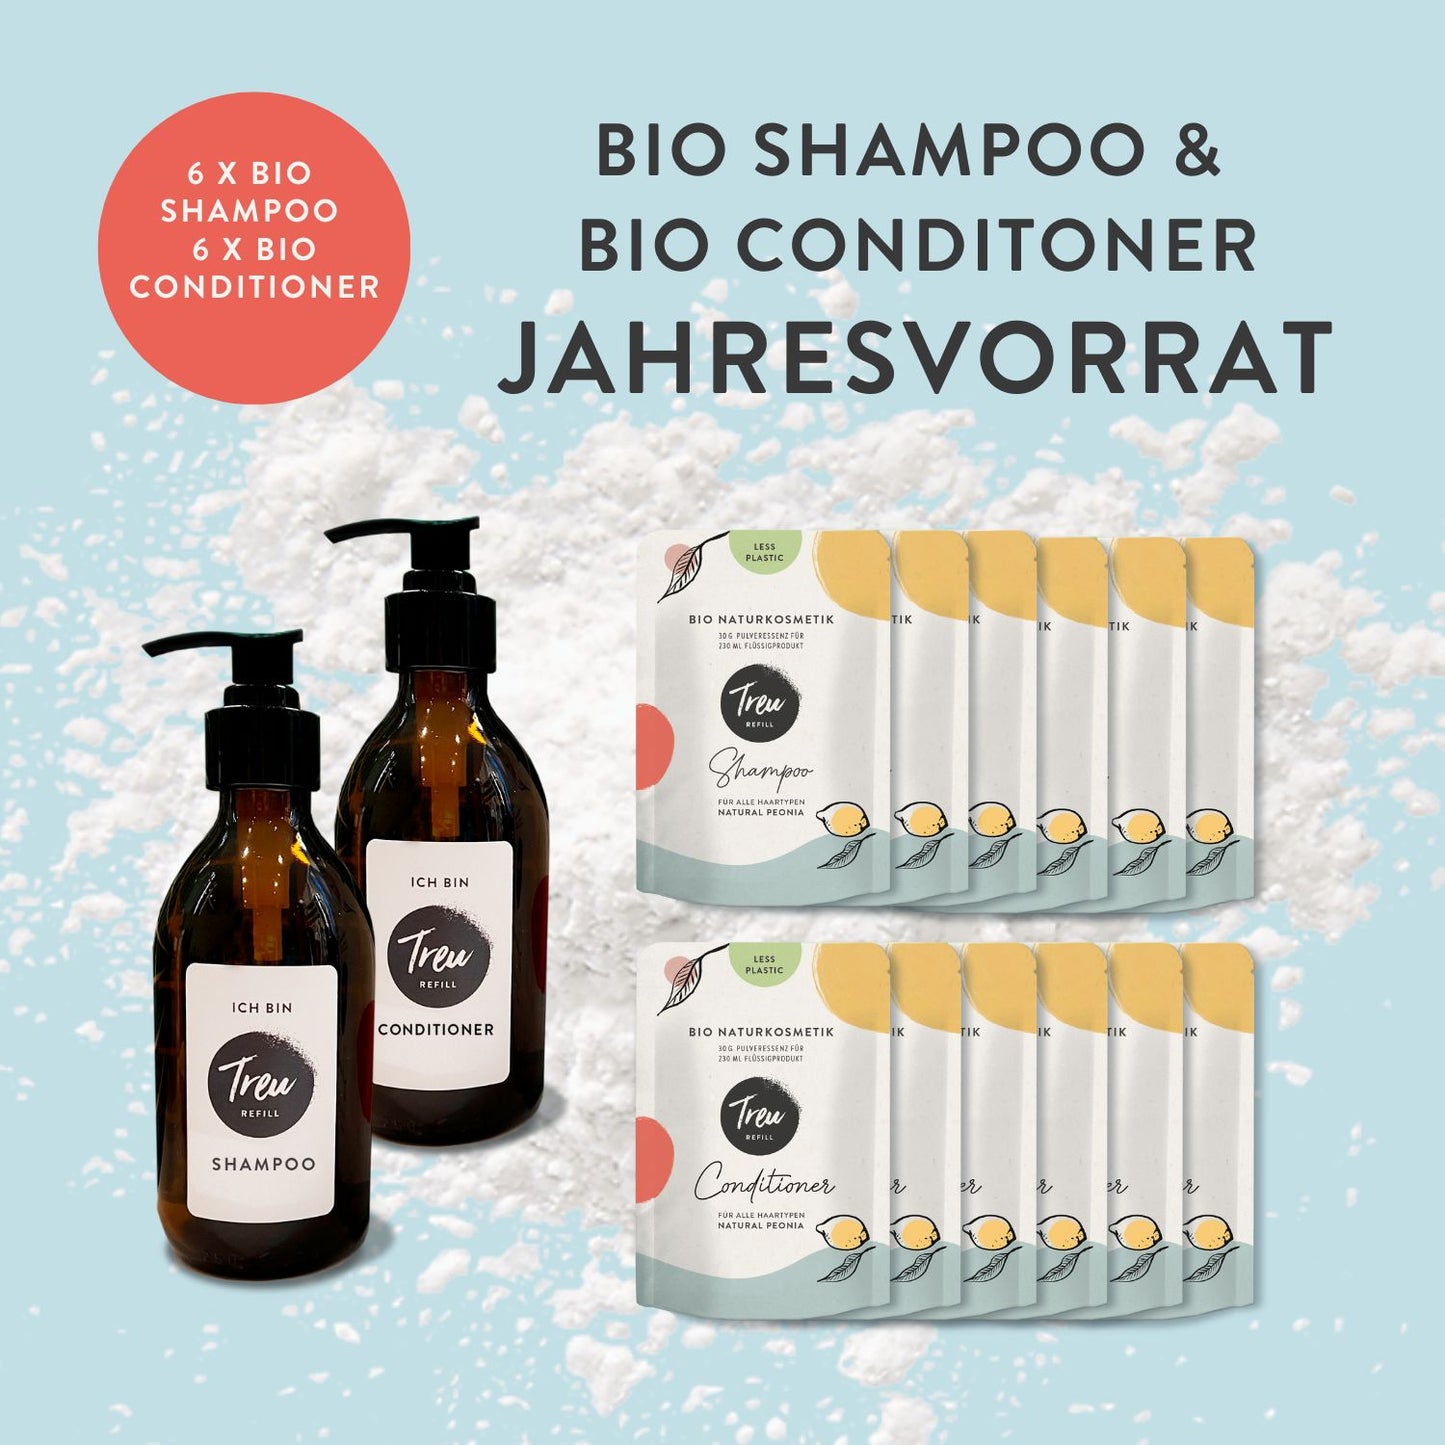 Jahresvorrat Bio Naturkosmetik Shampoo und Conditioner in Pulverform mit Refill-Flasche